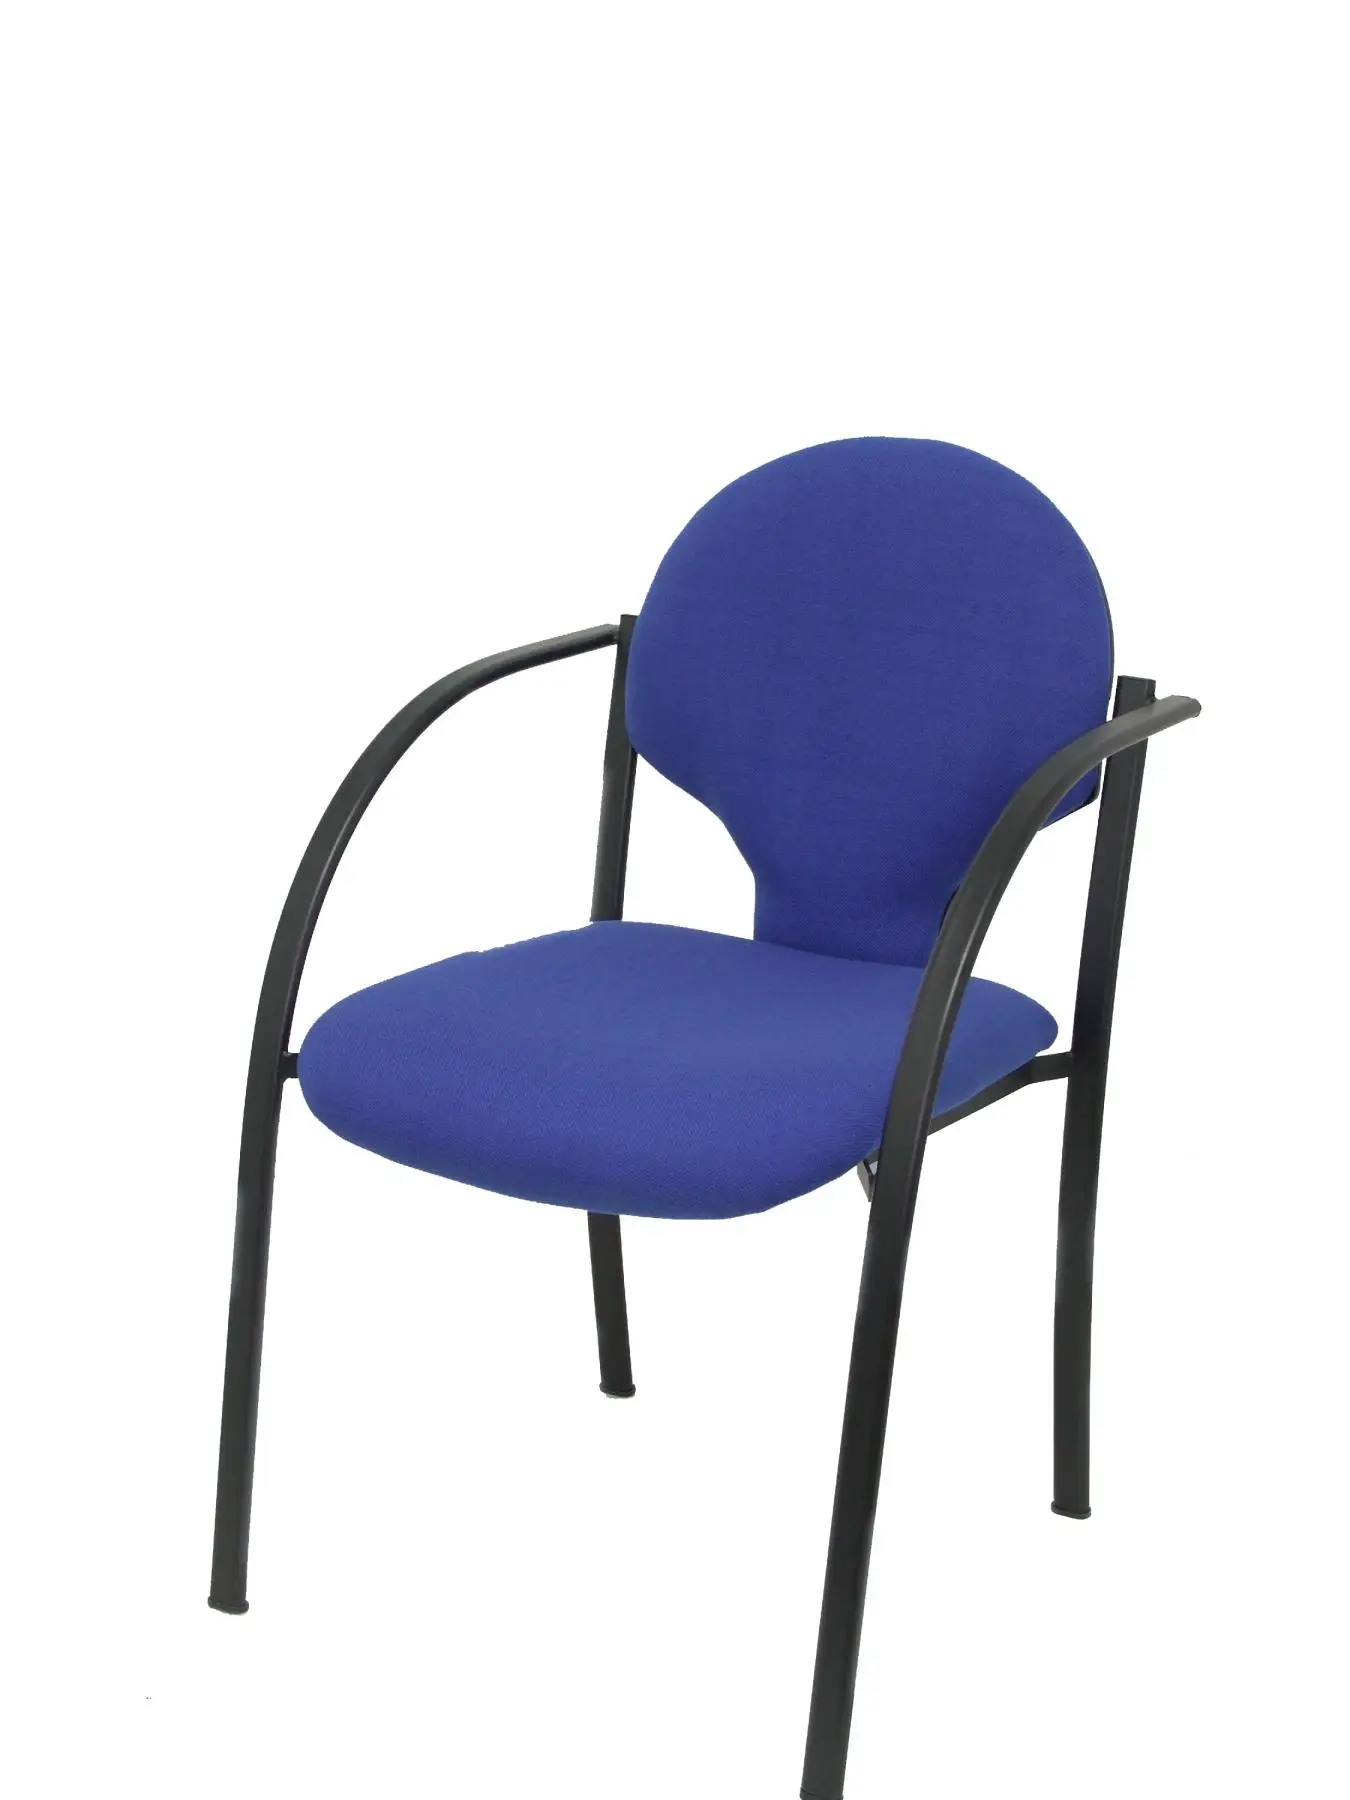 Пакет 2 гостевых стула стол эргономичный с подлокотниками фиксированные включены, штабелируемые и структура в черном цвете вверх сиденье и